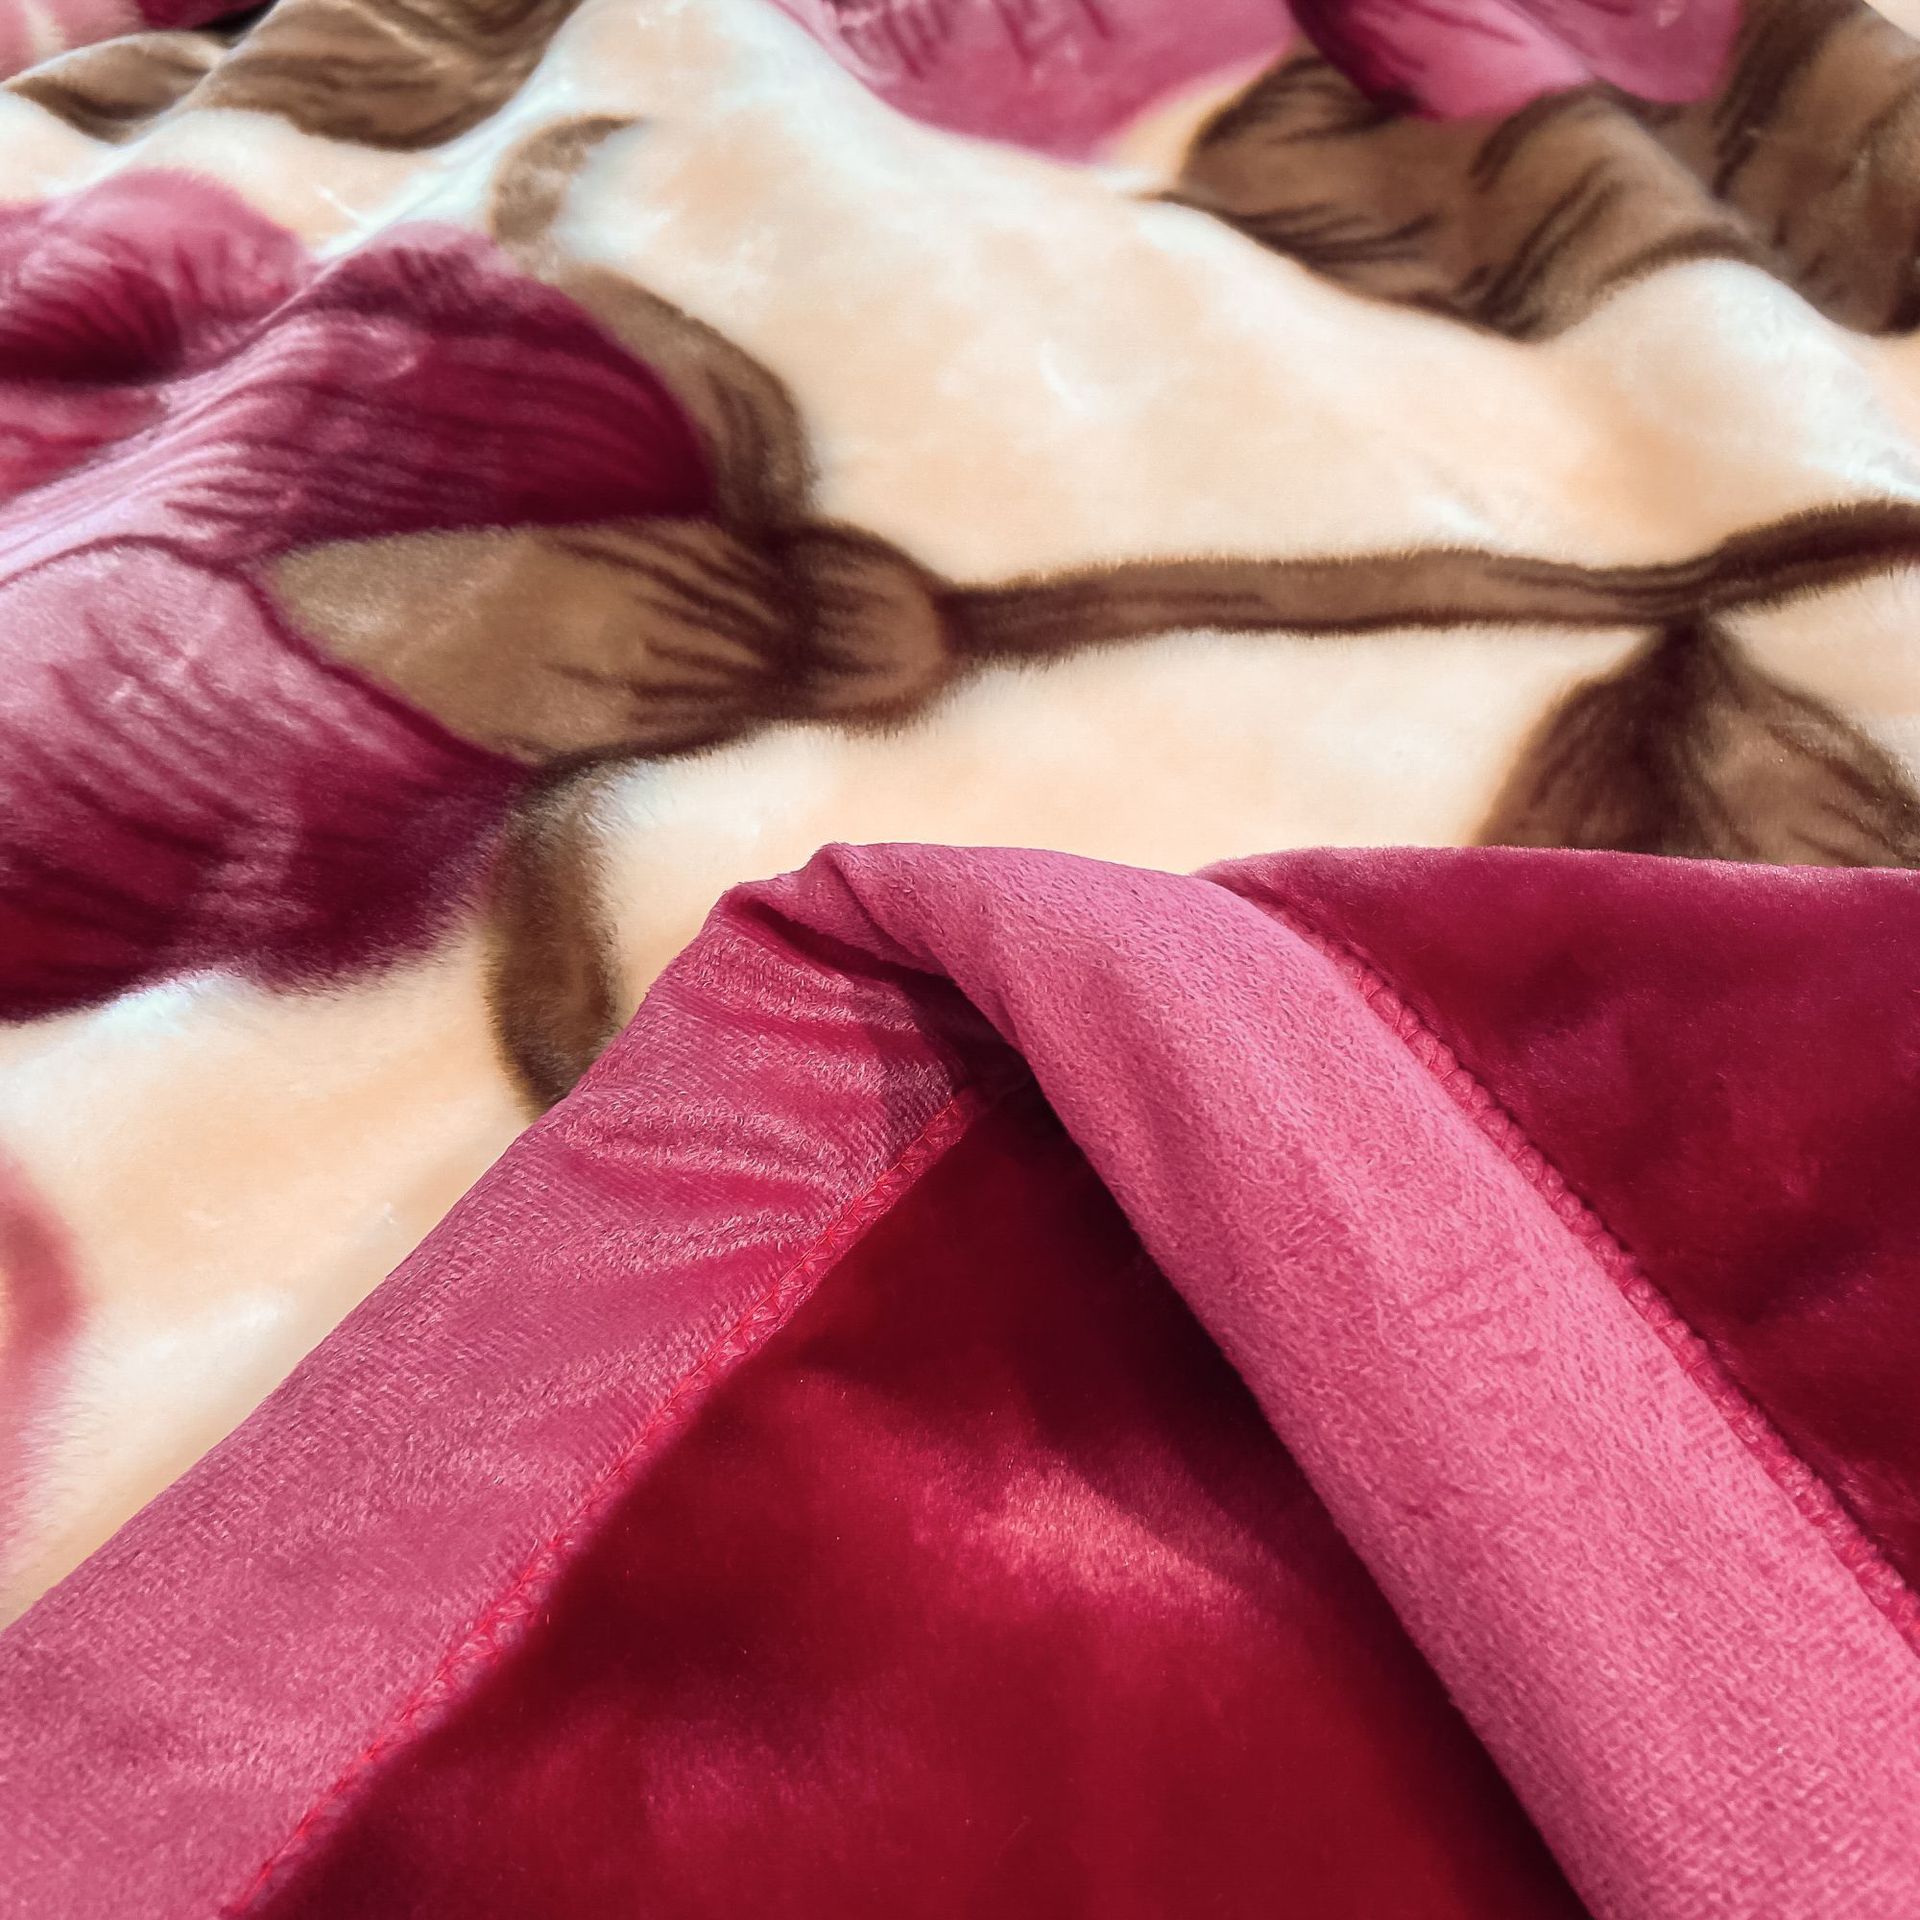 Raschel Bed Printed Blanket